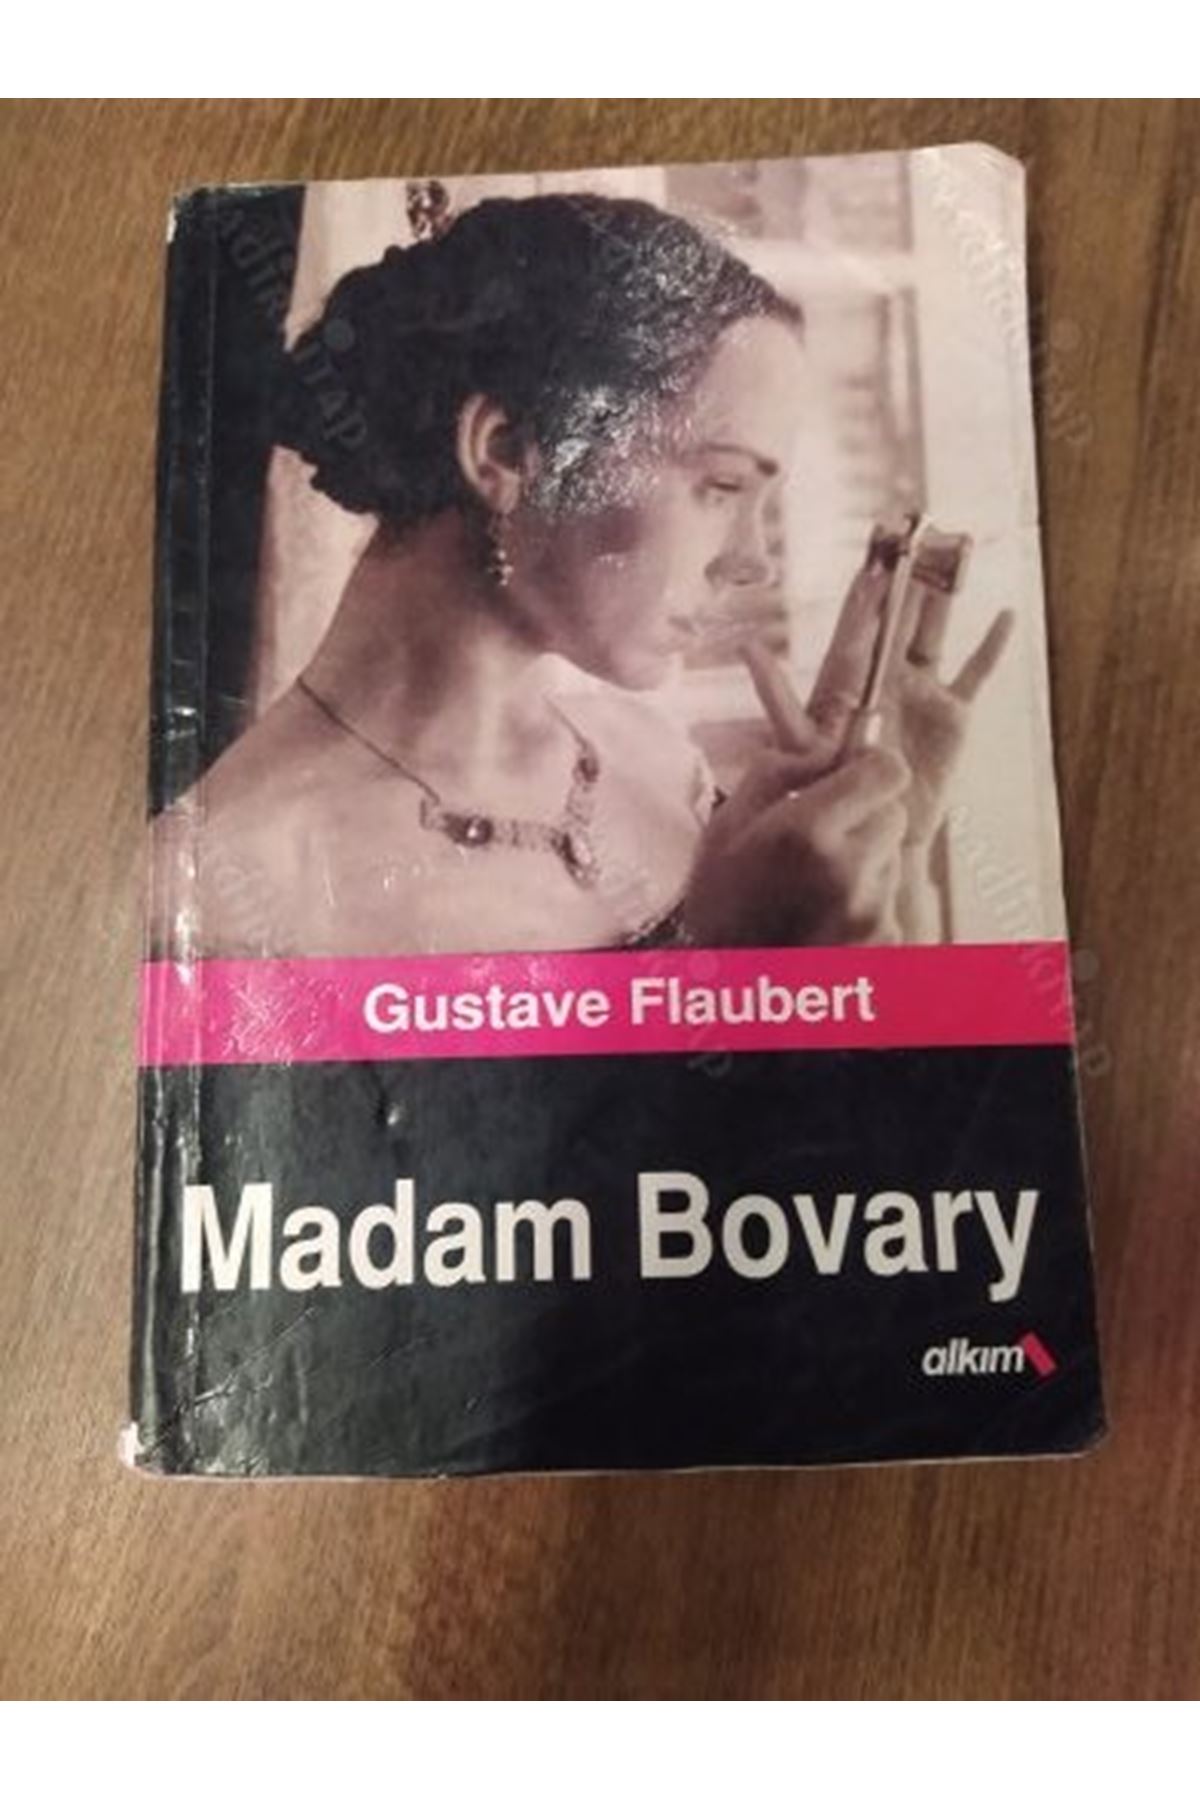 GUSTAVE FLAUBERT - MADAM BOVARY